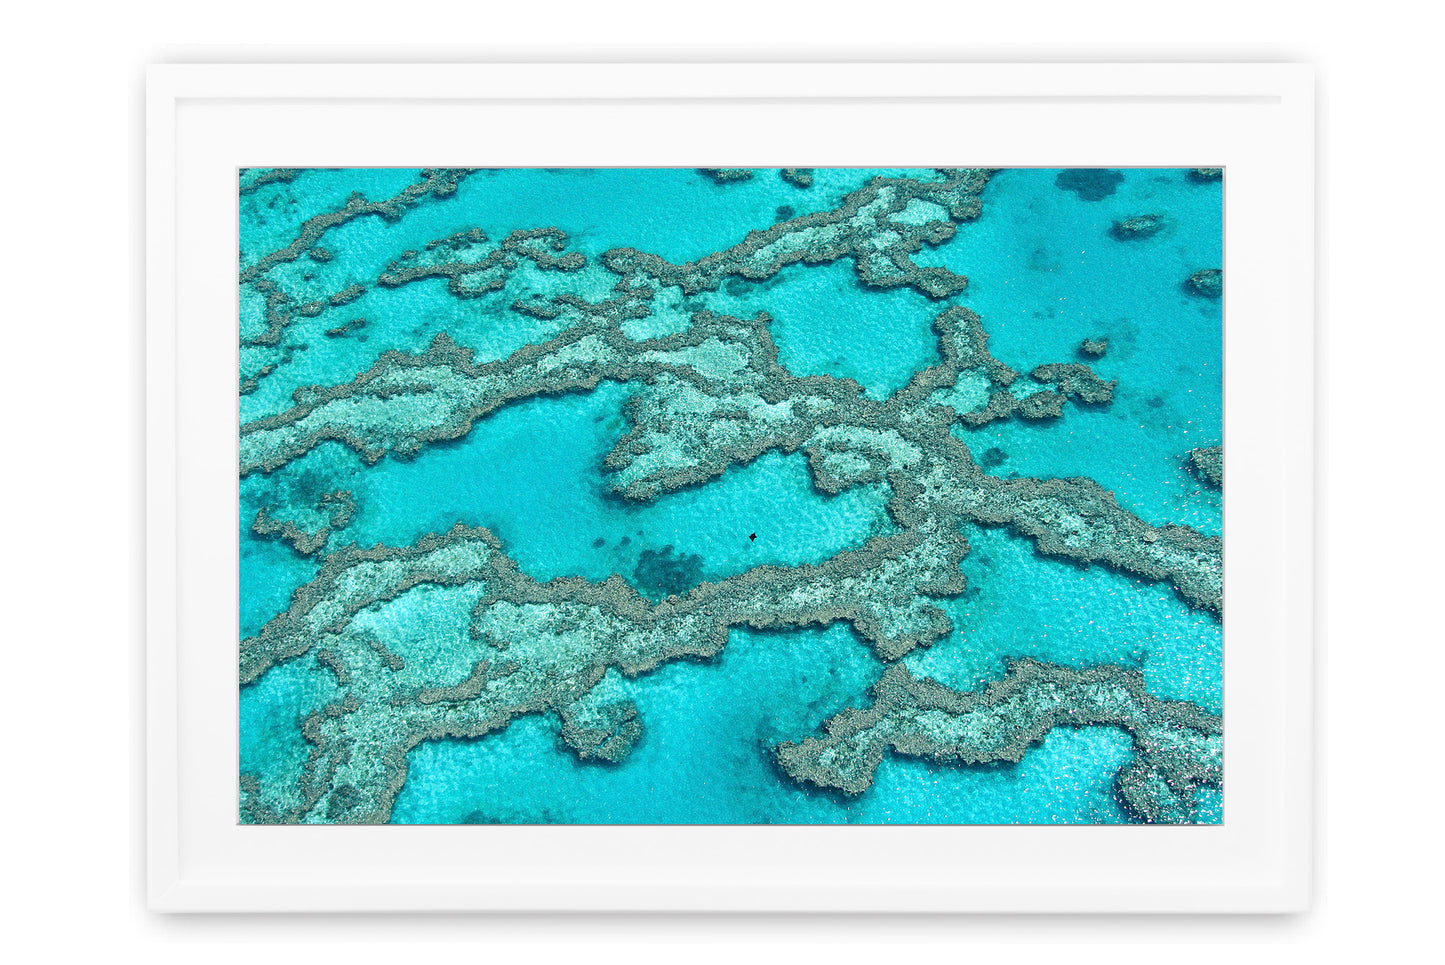 Manta Ray Reef